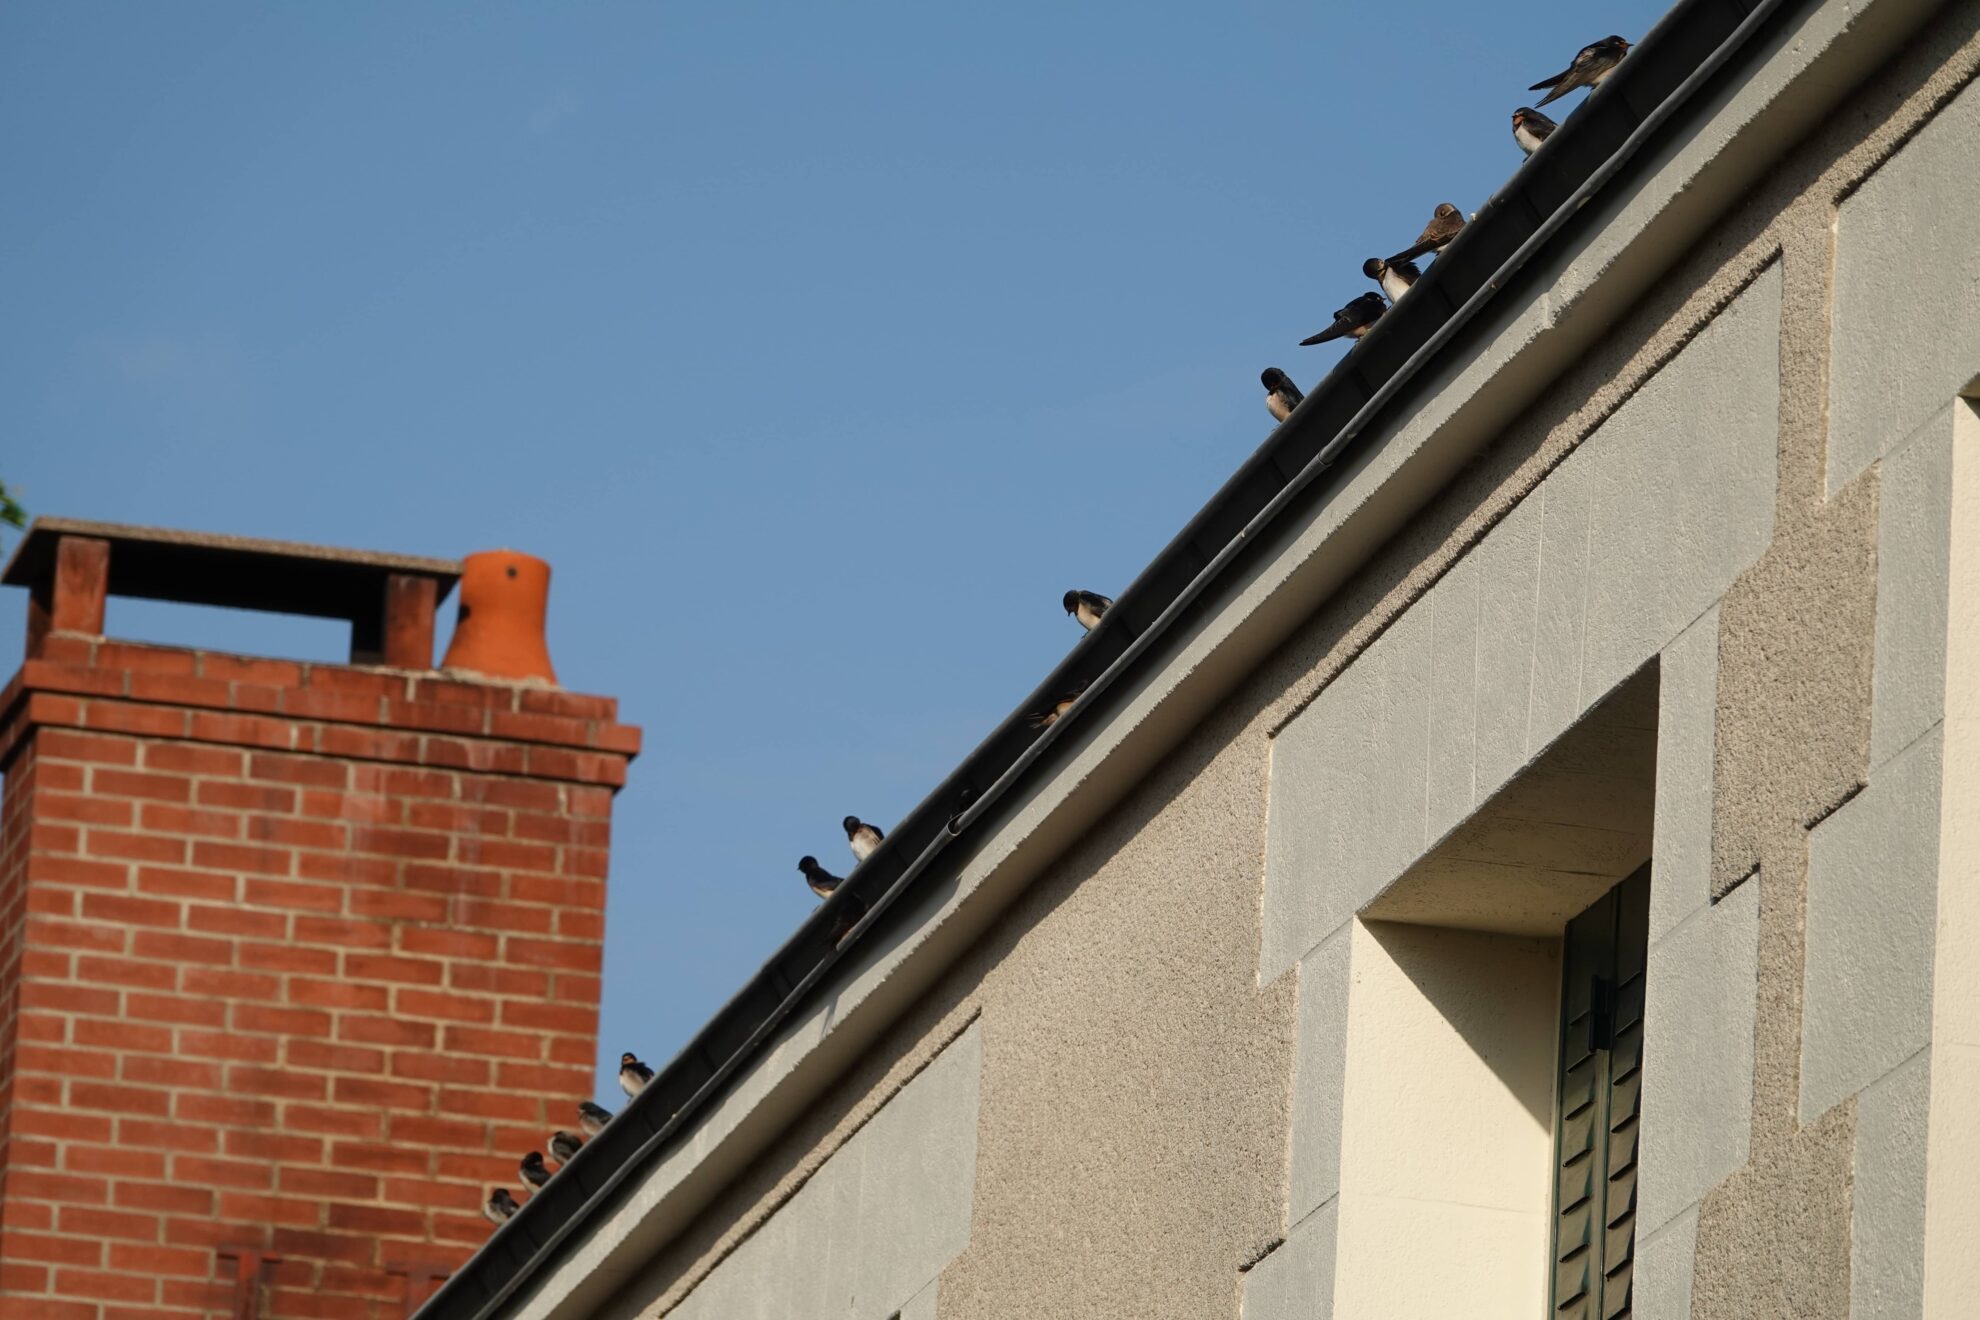 Zwaluwen op het dak van chambres d'hôtes Les hirondelles du moulin, Sassay, Frankrijk